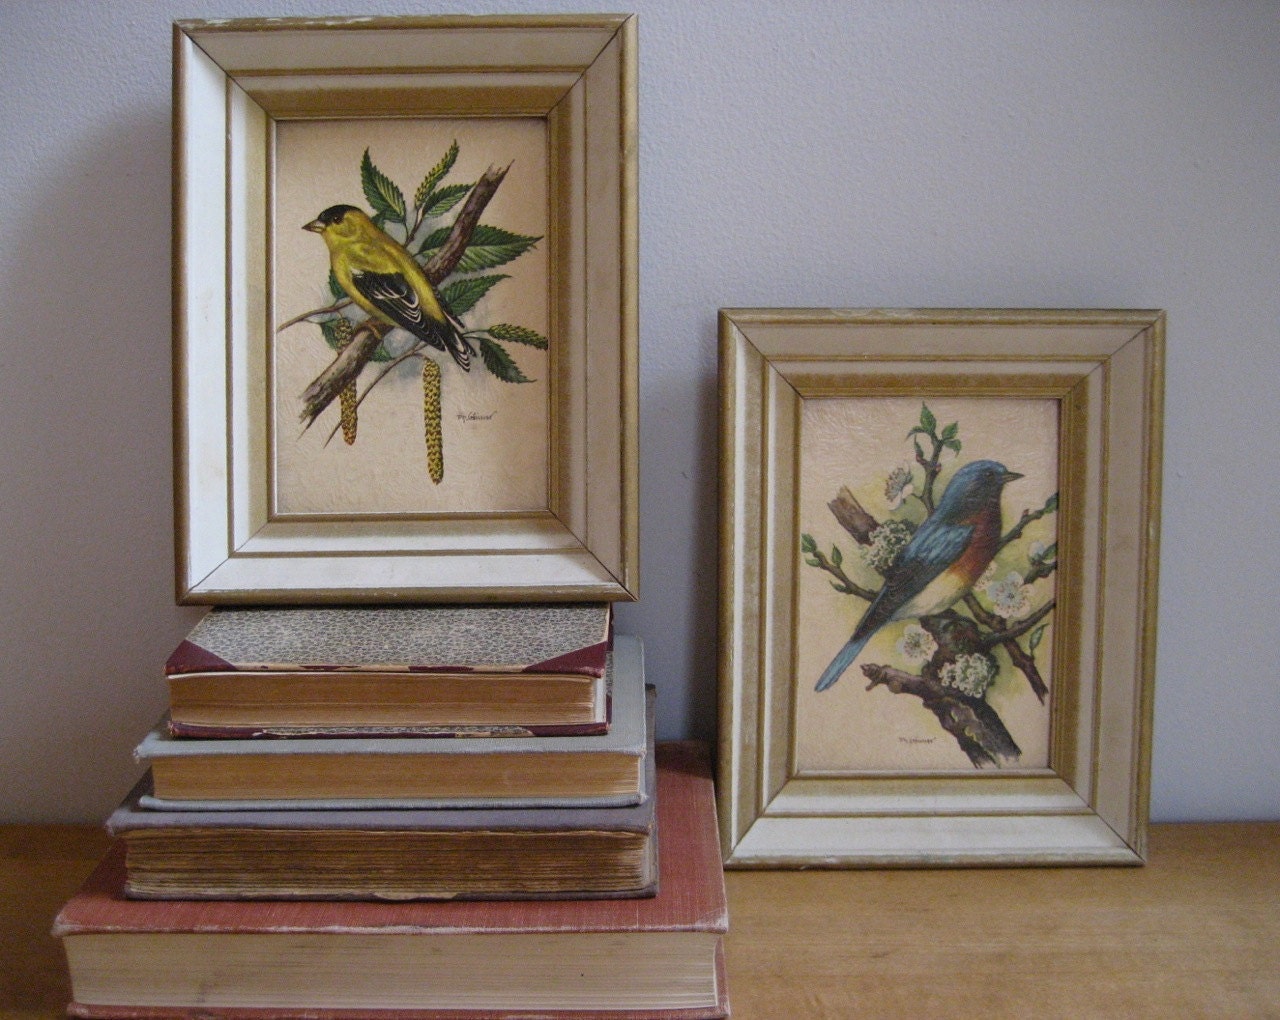 Vintage Pair of Framed Bird Prints by ameliajanevintage on Etsy